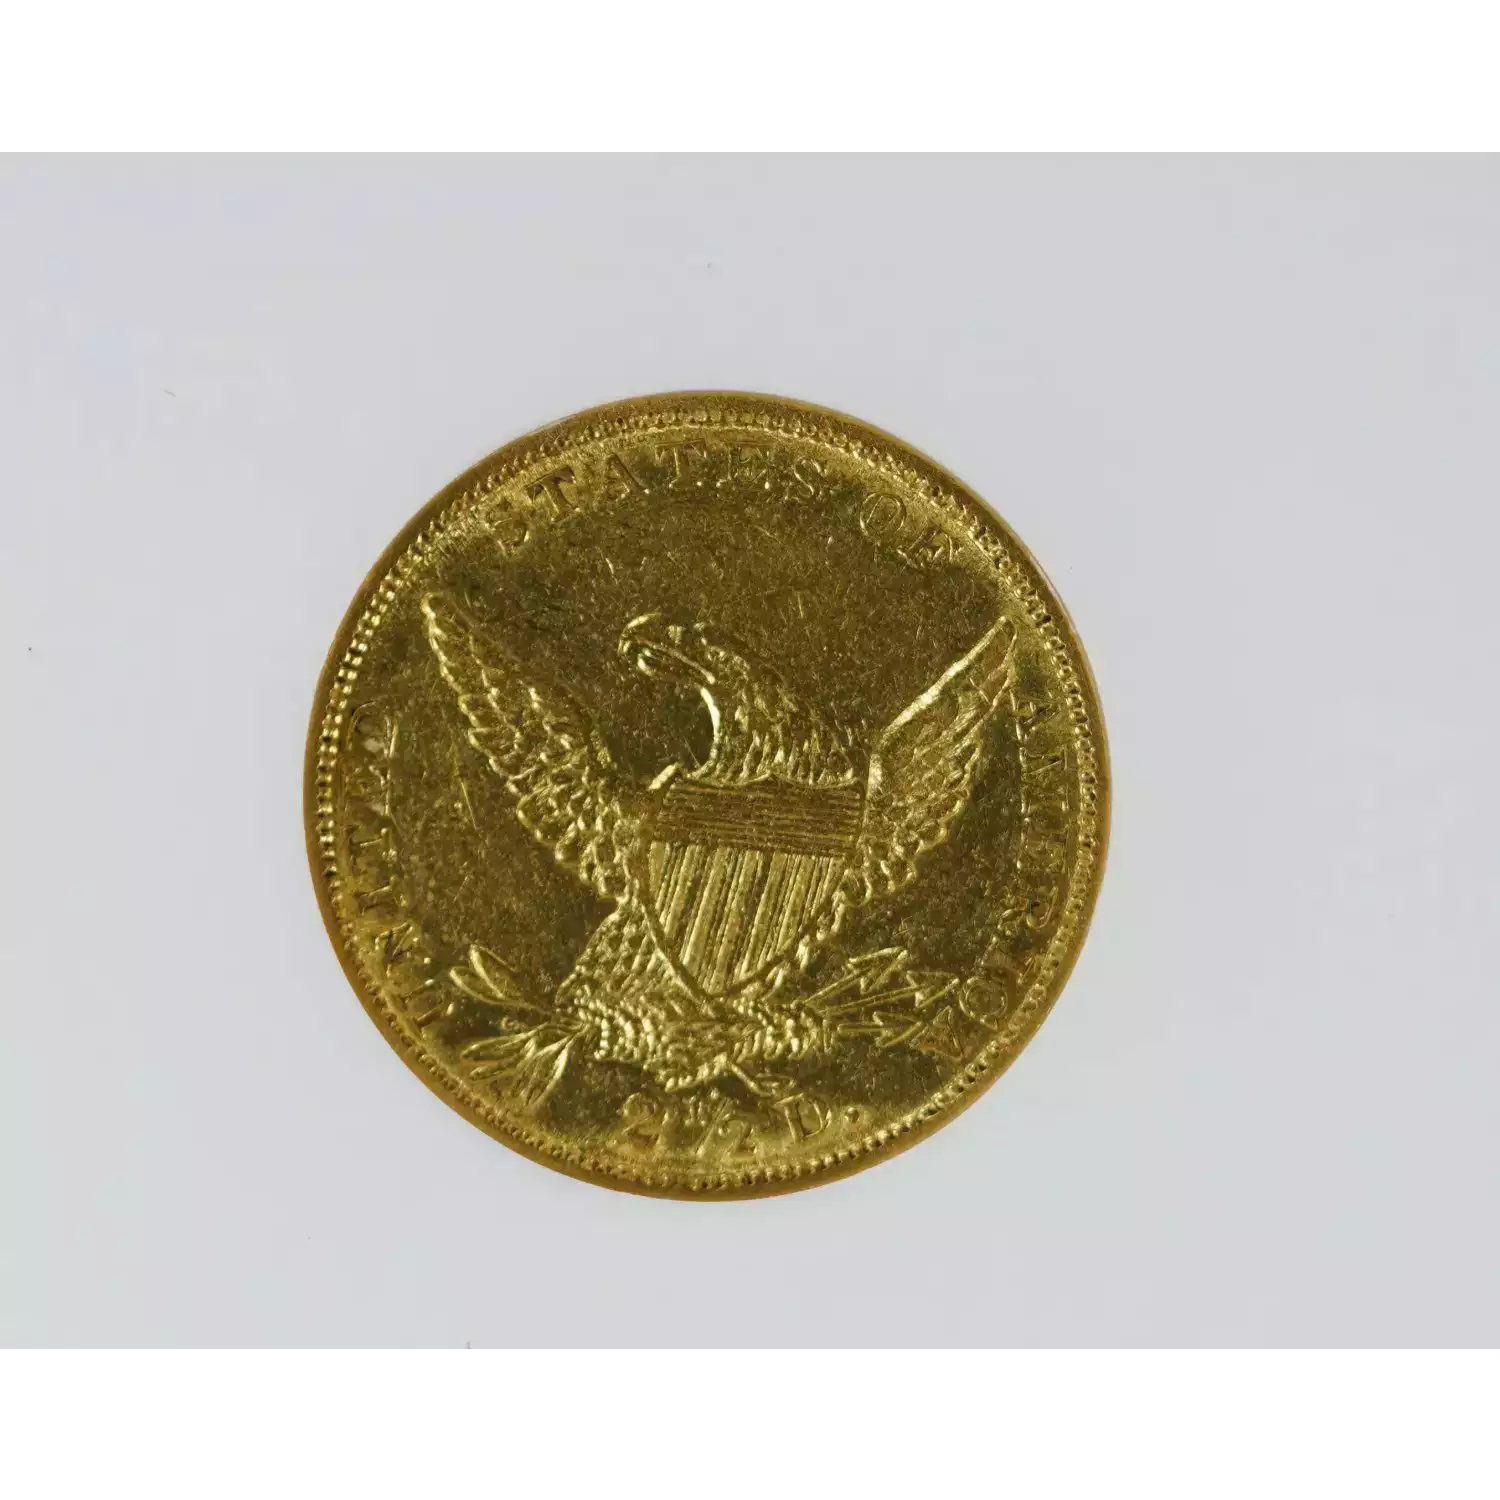 Quarter Eagles---Classic Head, 1834-1839 -Gold- 2.5 Dollar (4)